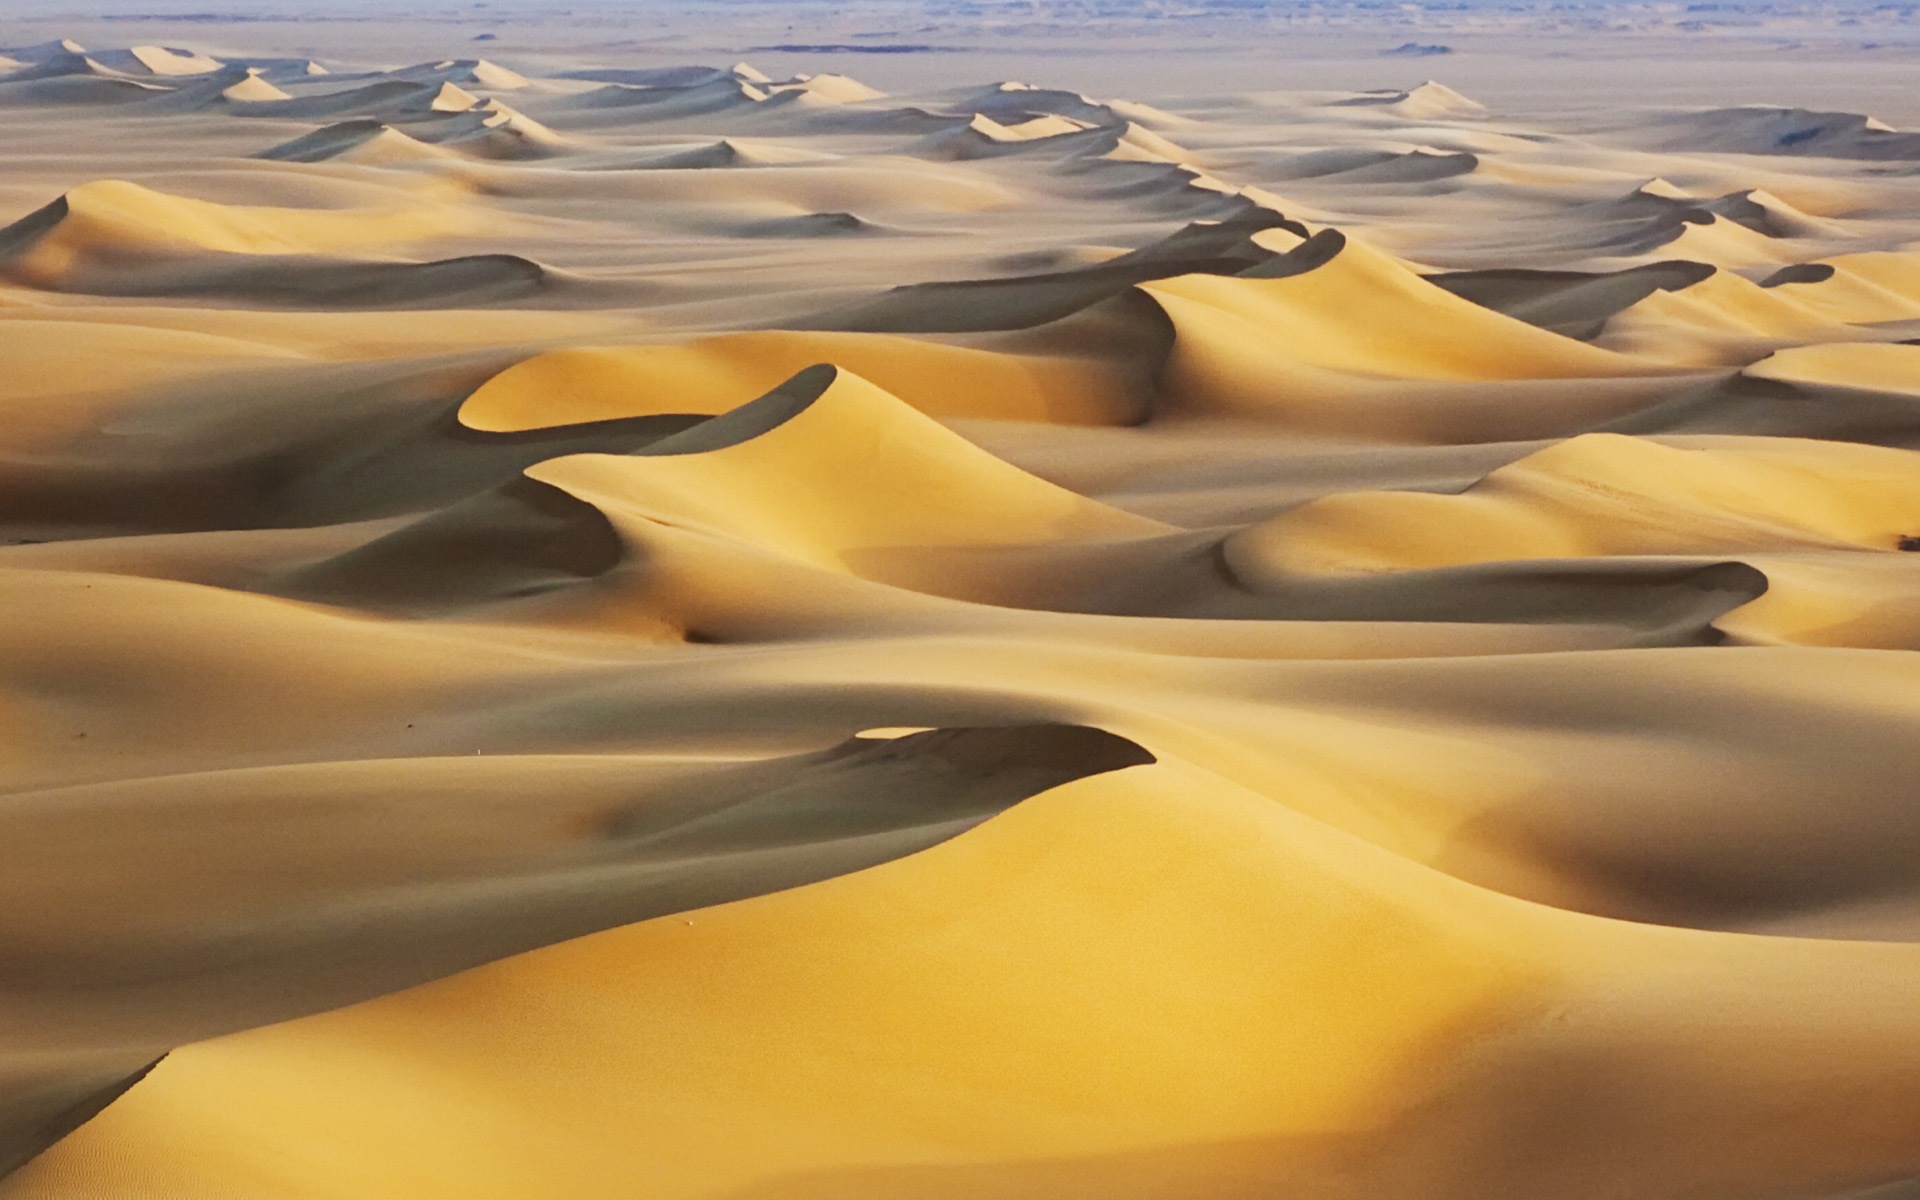 Les déserts chauds et arides, de Windows 8 fonds d'écran widescreen panoramique #4 - 1920x1200